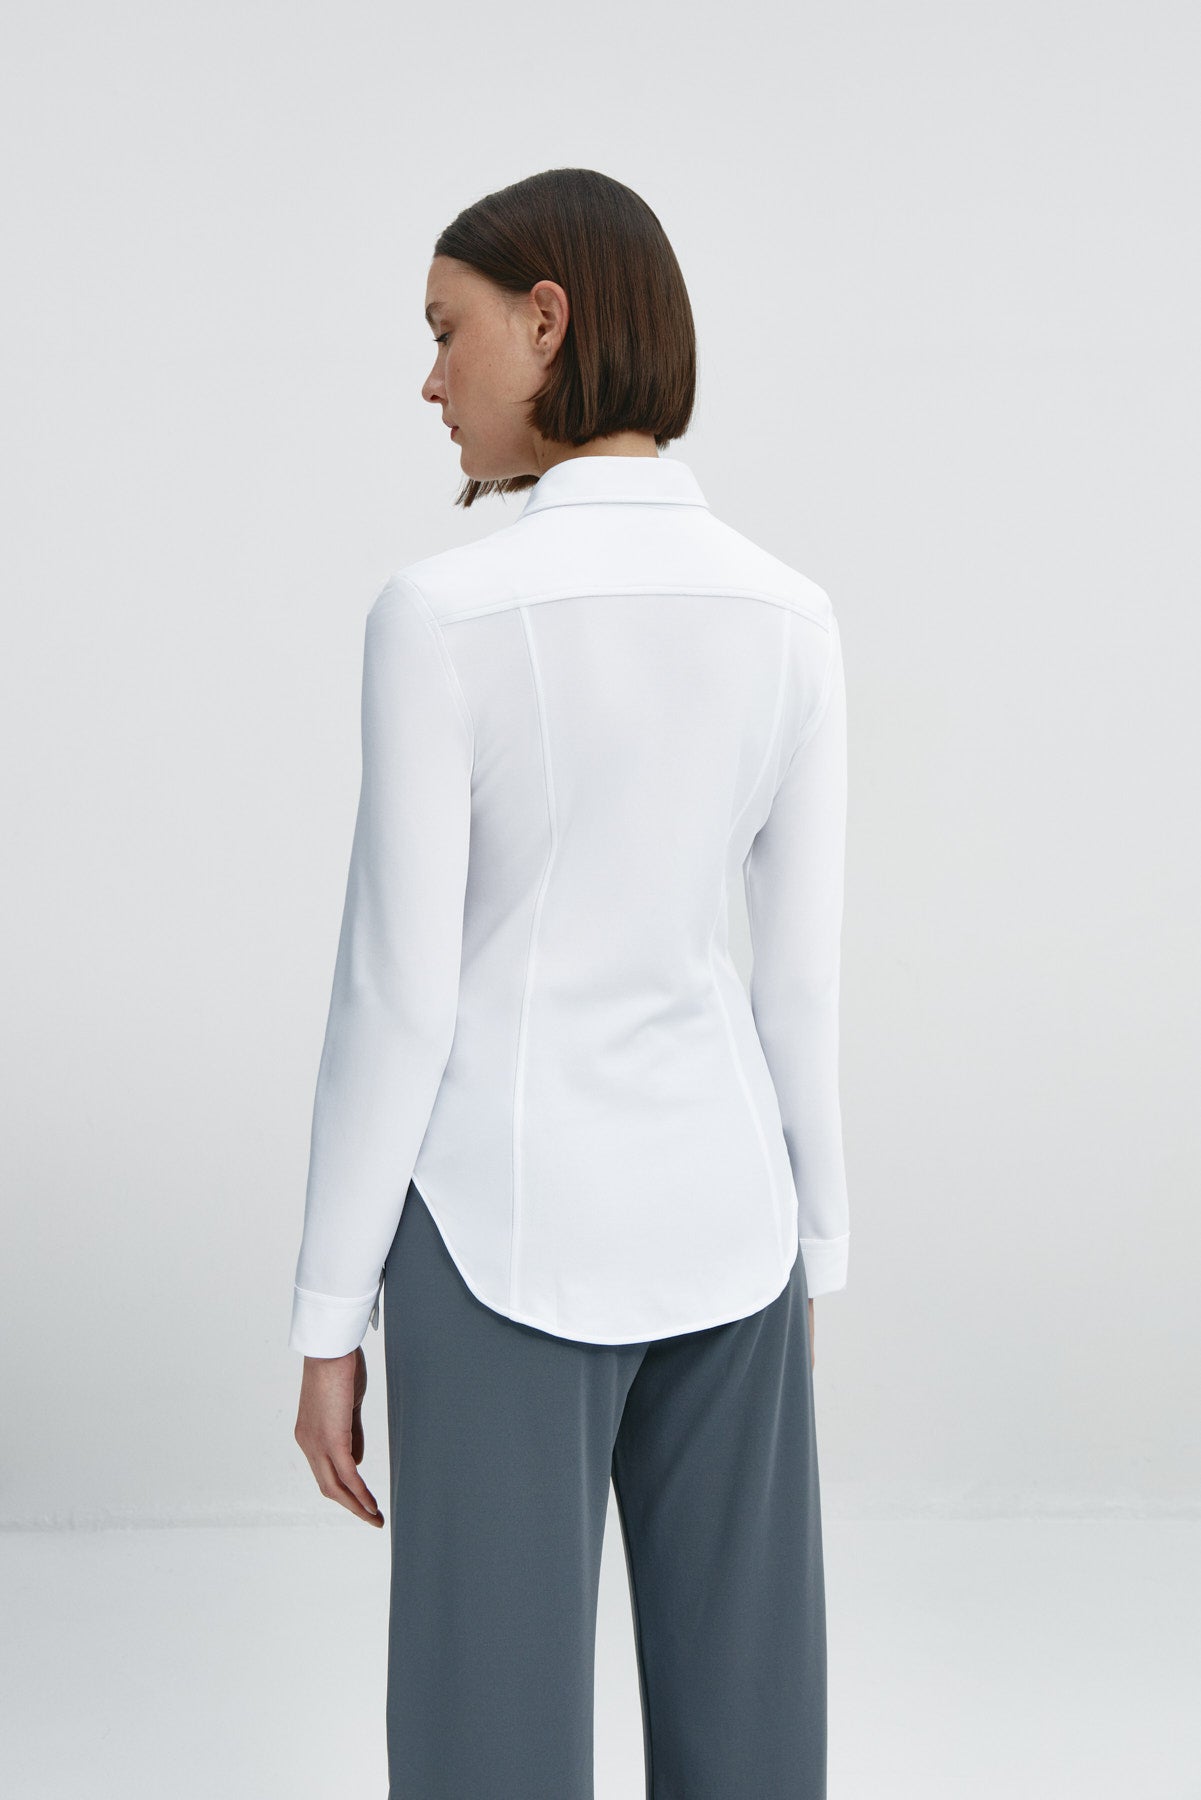  Camisa para mujer slim color blanco, básica y versátil. Foto espalda